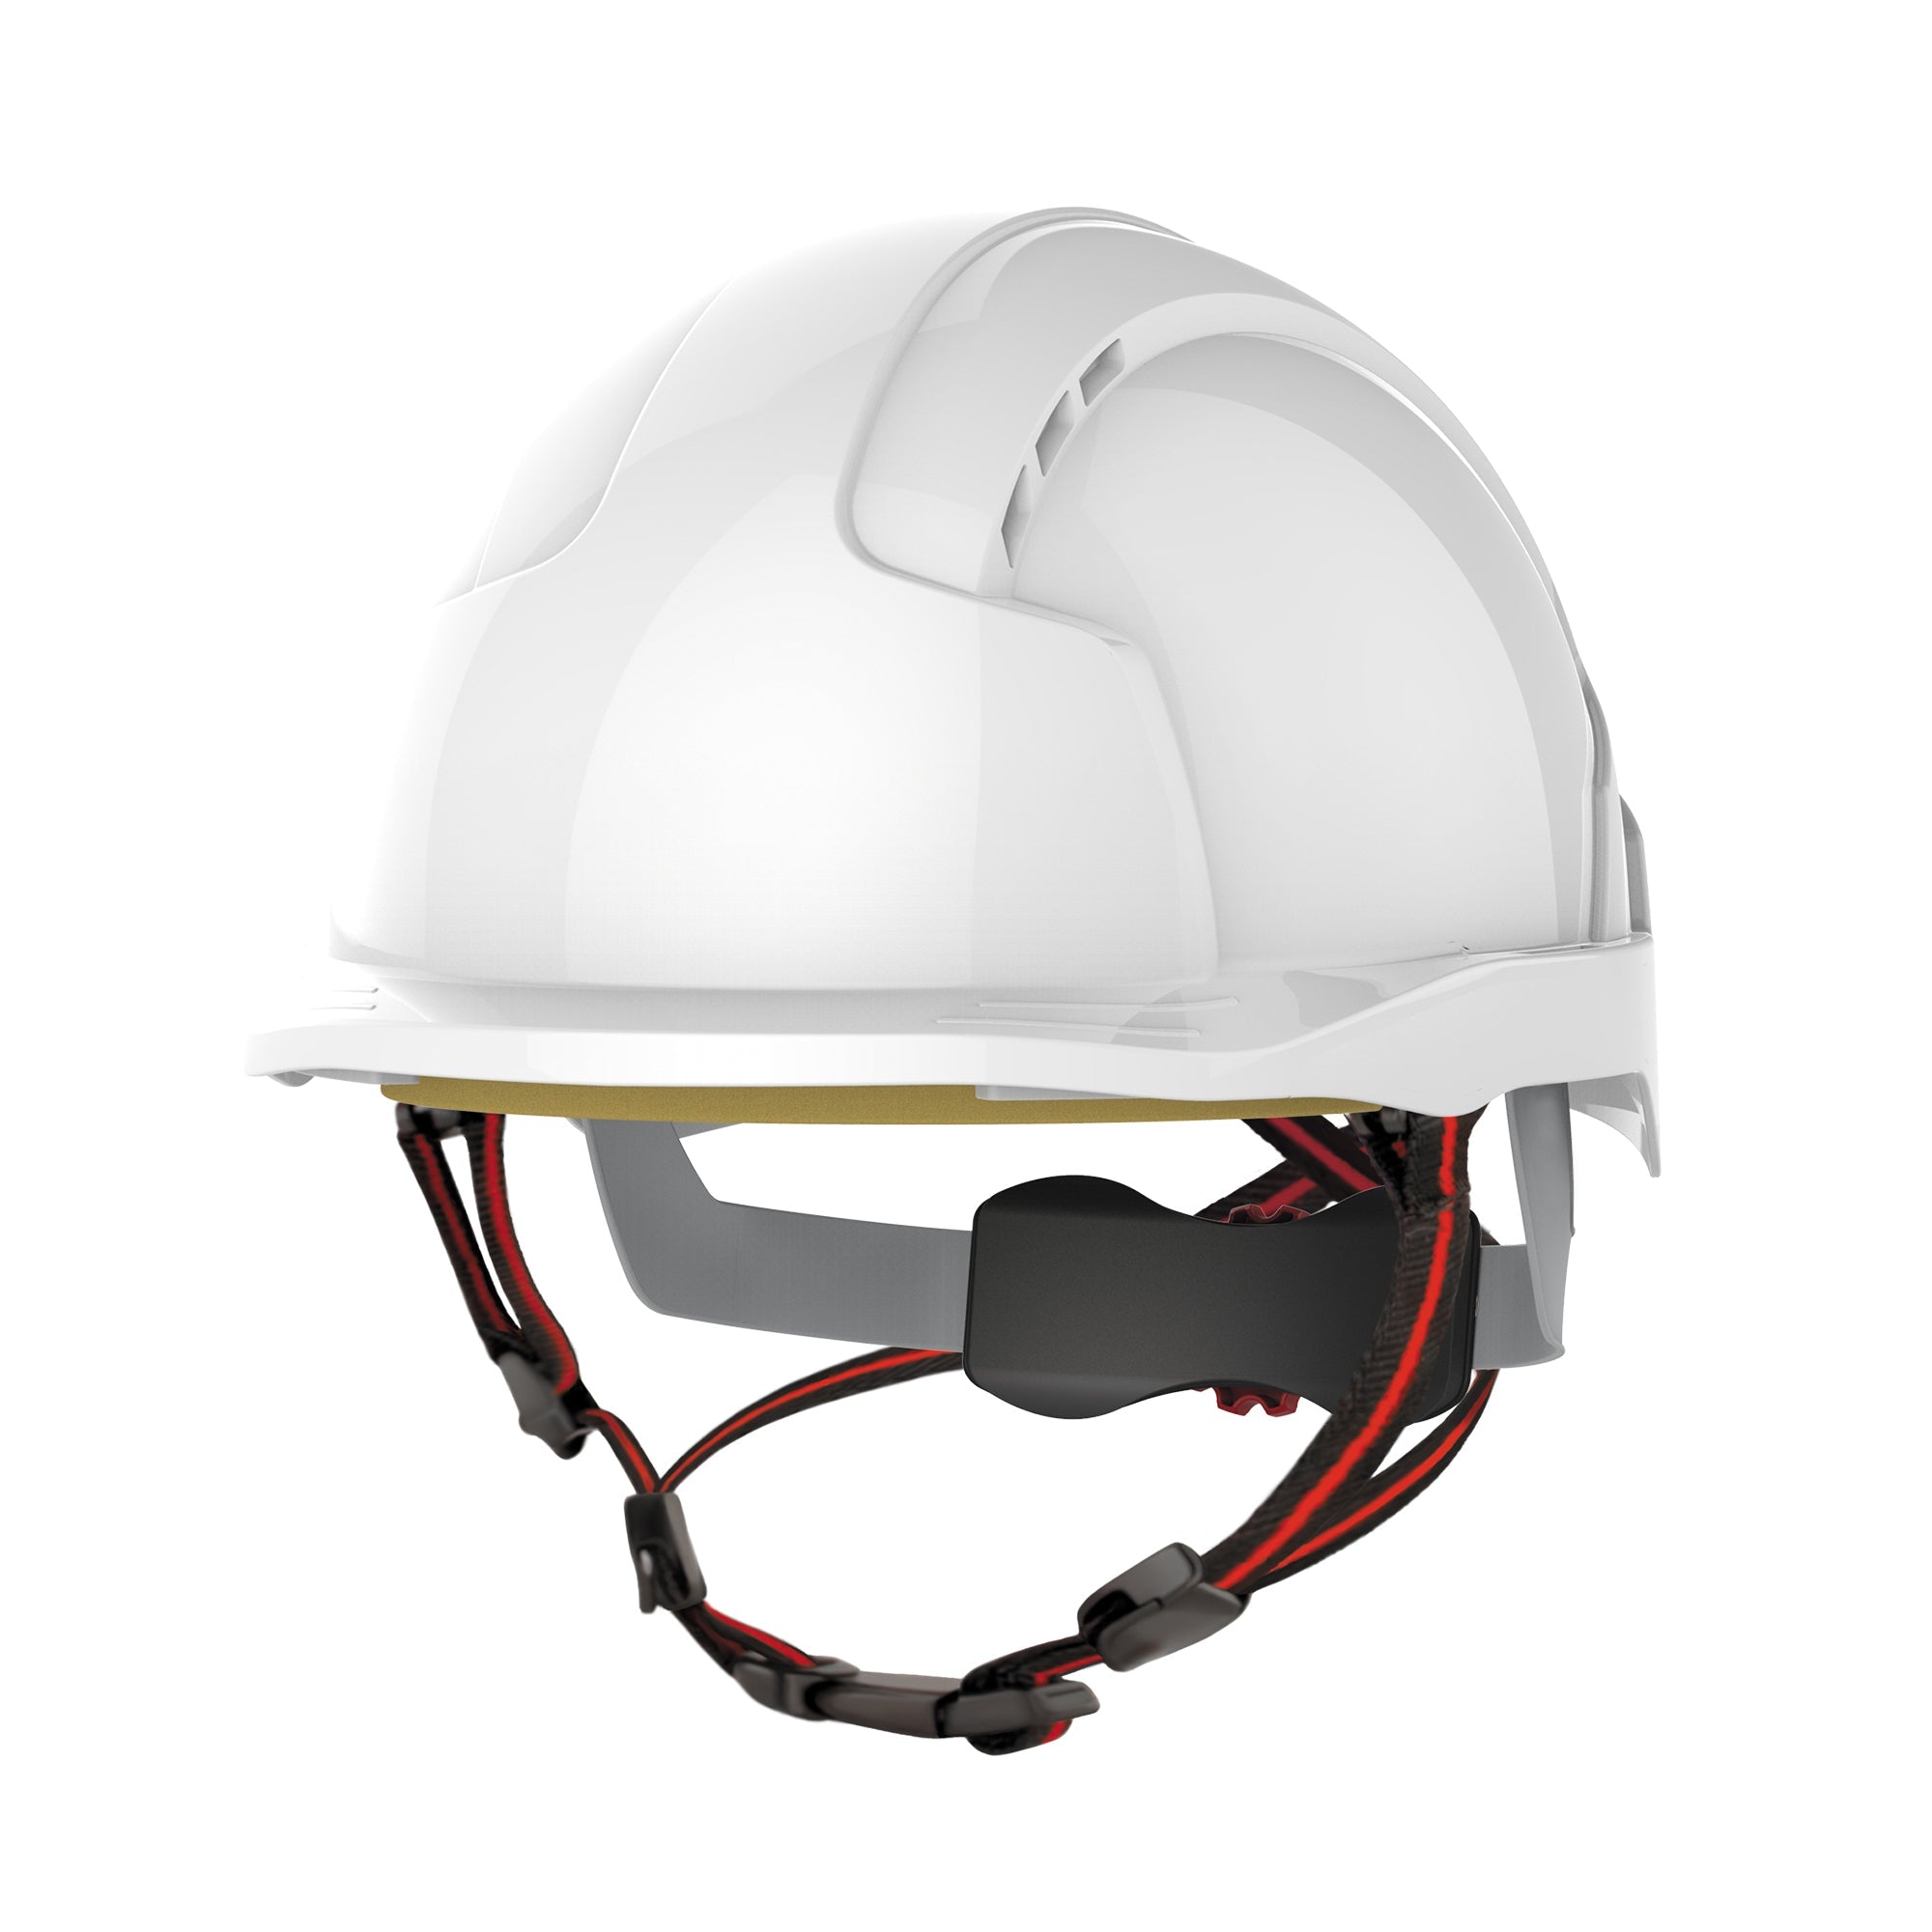 JSP EVOLite Skyworker - Industrial Working at Height Safety Helmet (Hard Hat)